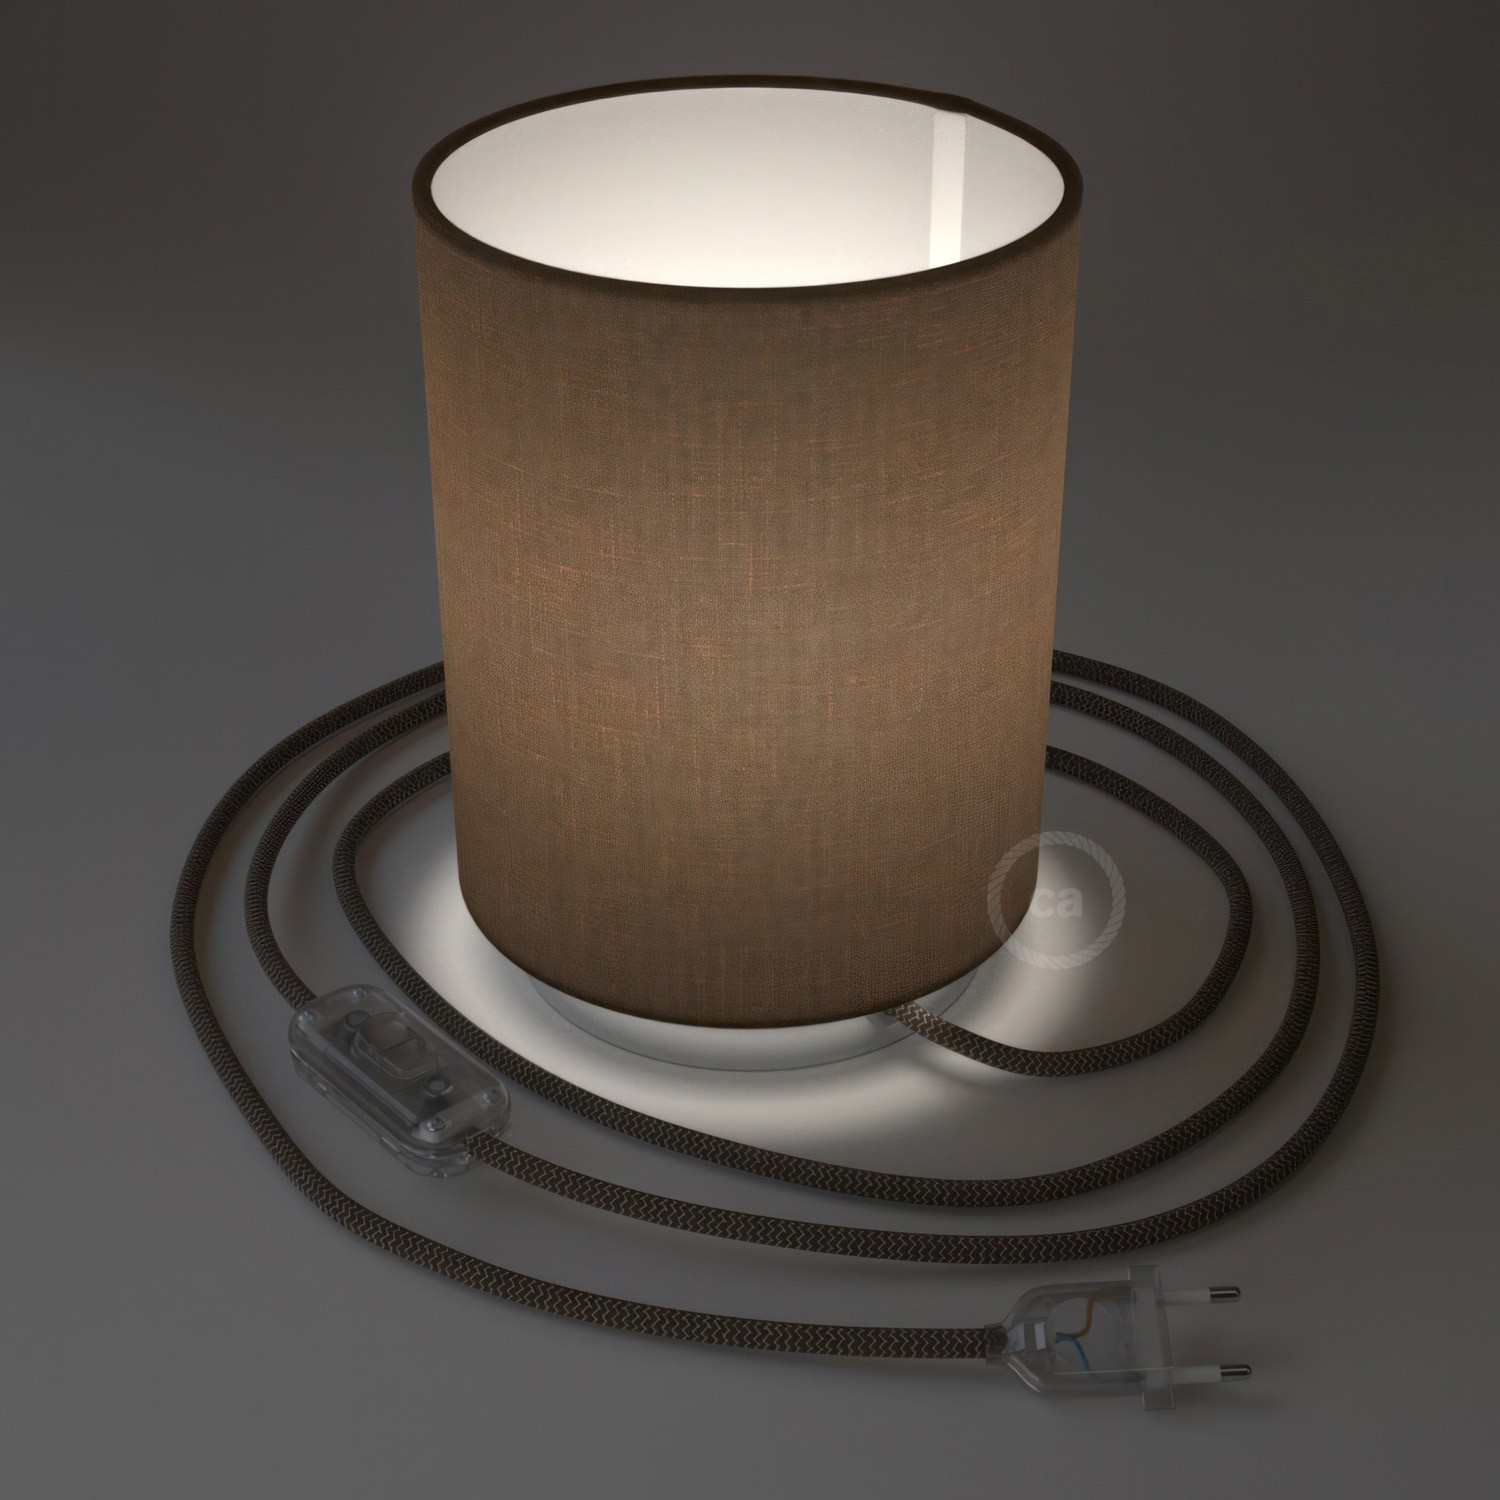 Posaluce aus Metall mit Lampenschirm Cilindro Camelot Braun, komplett mit Textilkabel, Schalter und 2-poligem Stecker